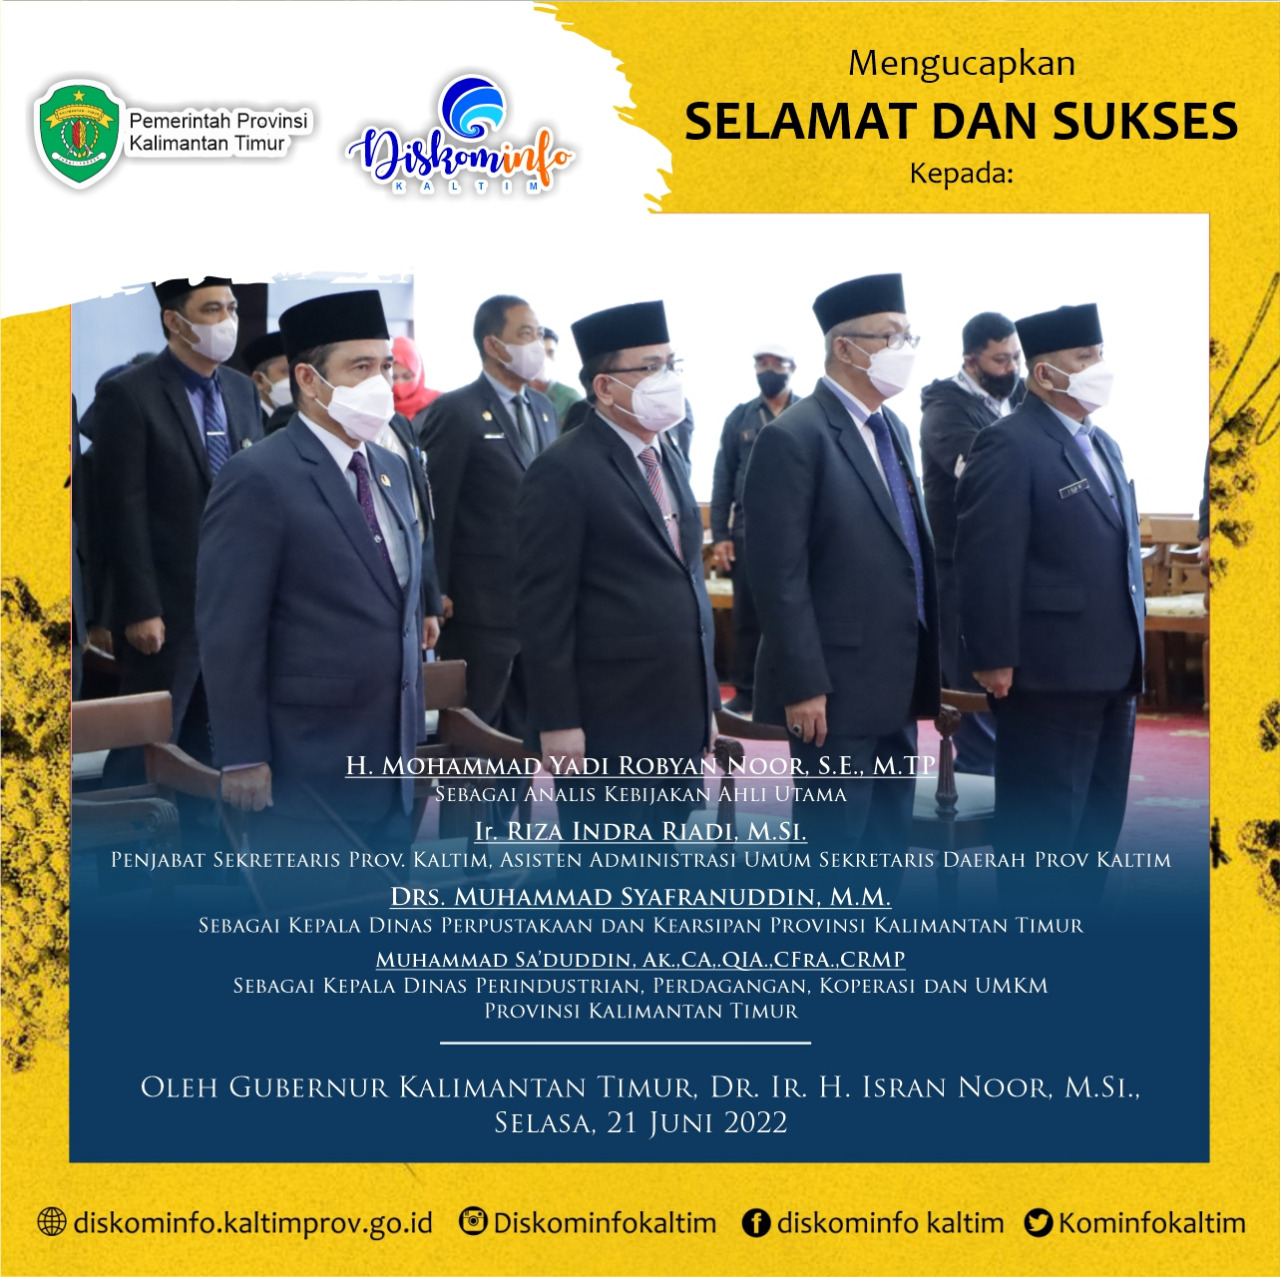 Atas Dilantiknya Empat Pejabat Pimpinan Pratama di lingkungan Pemerintah Provinsi Kalimantan Timur oleh Gubernur Kaltim Dr H Isran Noor :